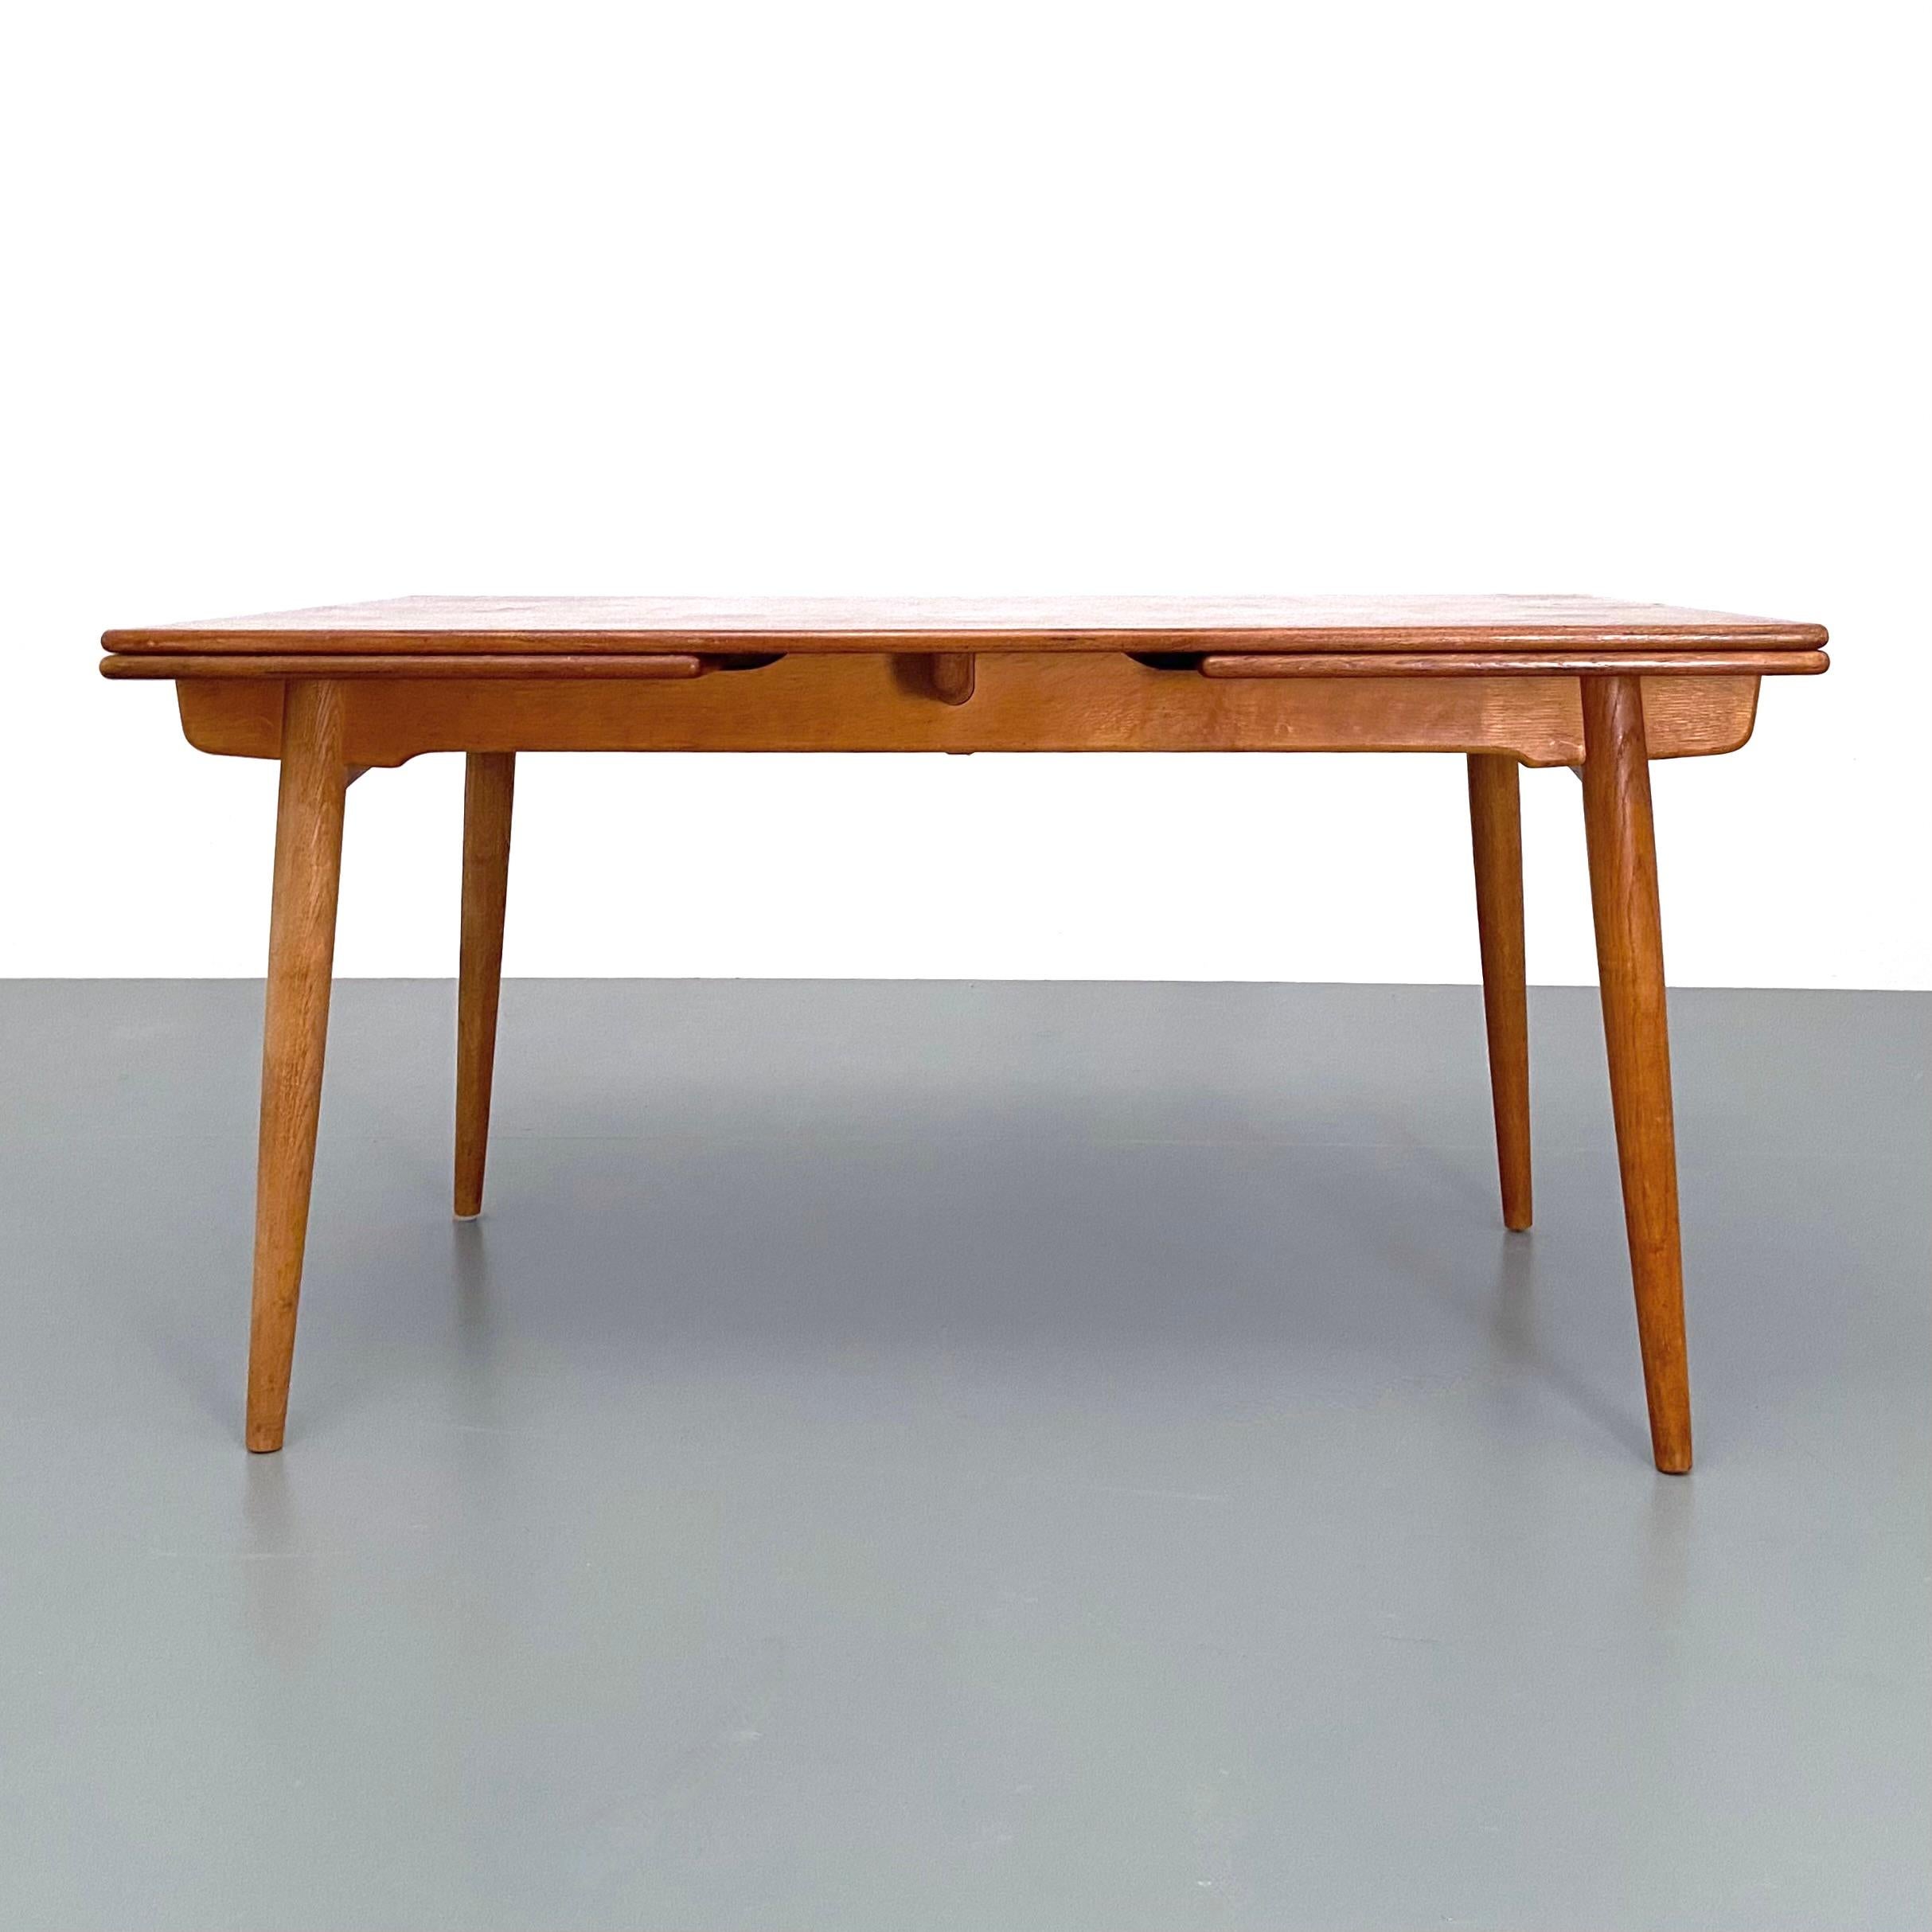 Esstisch Modell AT-312, entworfen von Hans Wegner für Andreas Tuck, Dänemark, 1960er Jahre.
Der aus Eiche gefertigte Tisch verfügt über zwei ausziehbare Platten, die sich unter der Tischplatte verbergen und sich schön in diese integrieren, wenn der